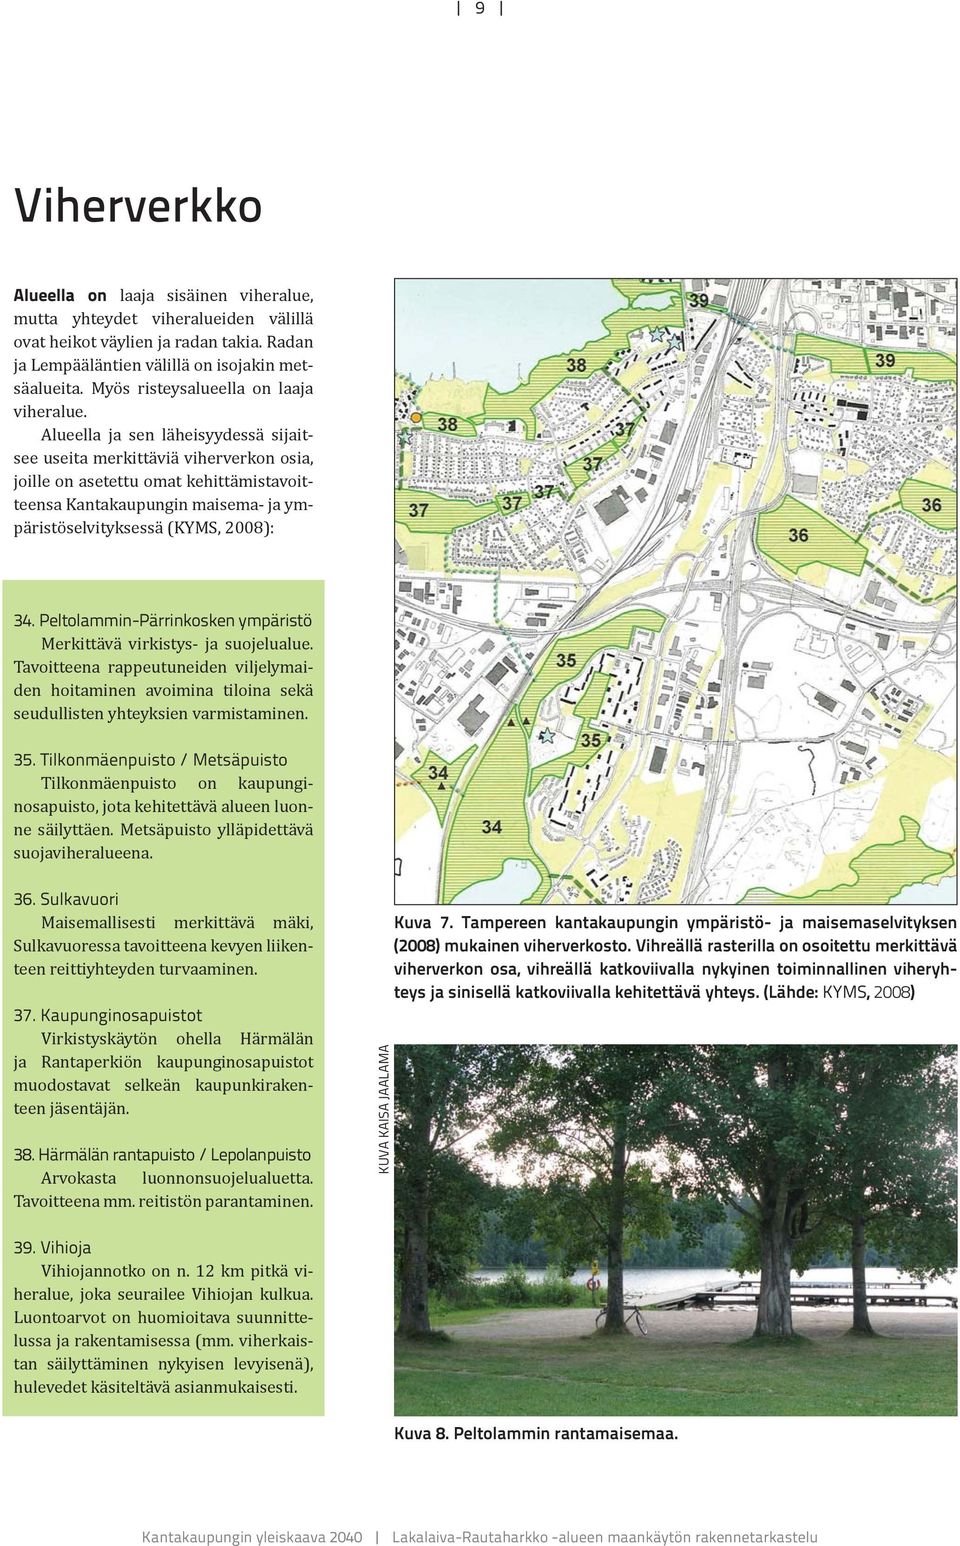 Alueella ja sen läheisyydessä sijaitsee useita merkittäviä viherverkon osia, joille on asetettu omat kehittämistavoitteensa Kantakaupungin maisema- ja ympäristöselvityksessä (KYMS, 2008): 34.